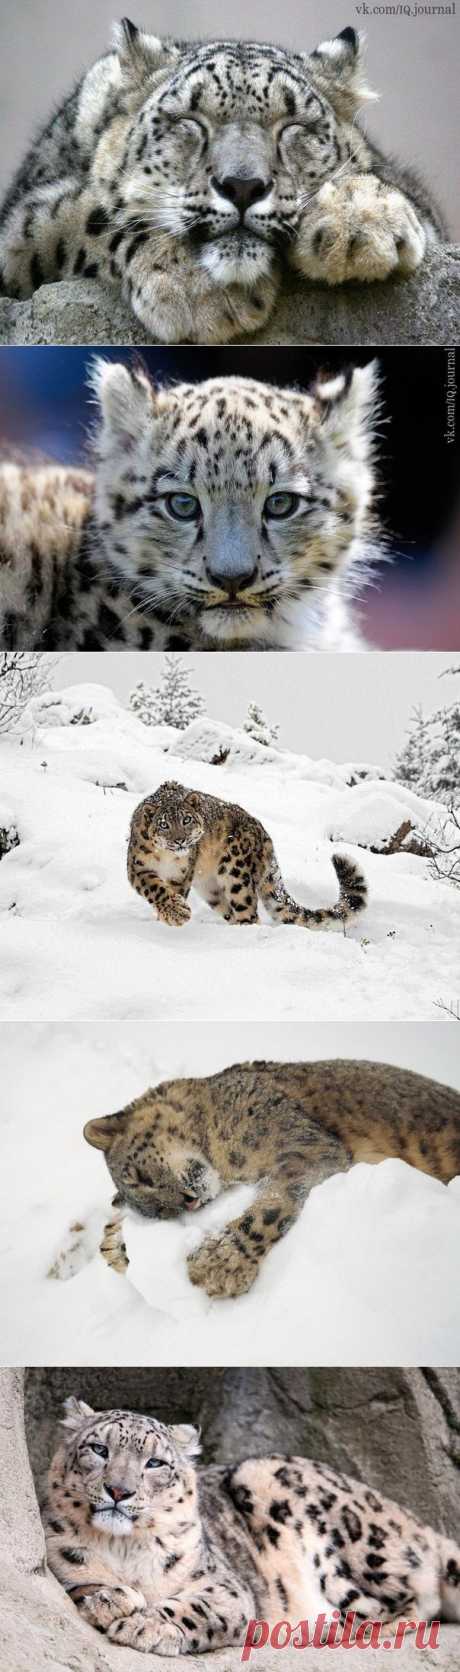 Снежный барс Ирбис, или снежный барс, или снежный леопард — крупное хищное млекопитающее из семейства кошачьих, обитающее в горных массивах Центральной Азии. Внешний вид этого зверя указывает на большое сходство с леопардом. Действительно, размером и осанкой эти звери схожи (длина тела у снежного барса немногим больше метра, вес 25-40 кг). У снежного барса такая же пятнистая окраска, но тем не менее это совершенно разные звери....